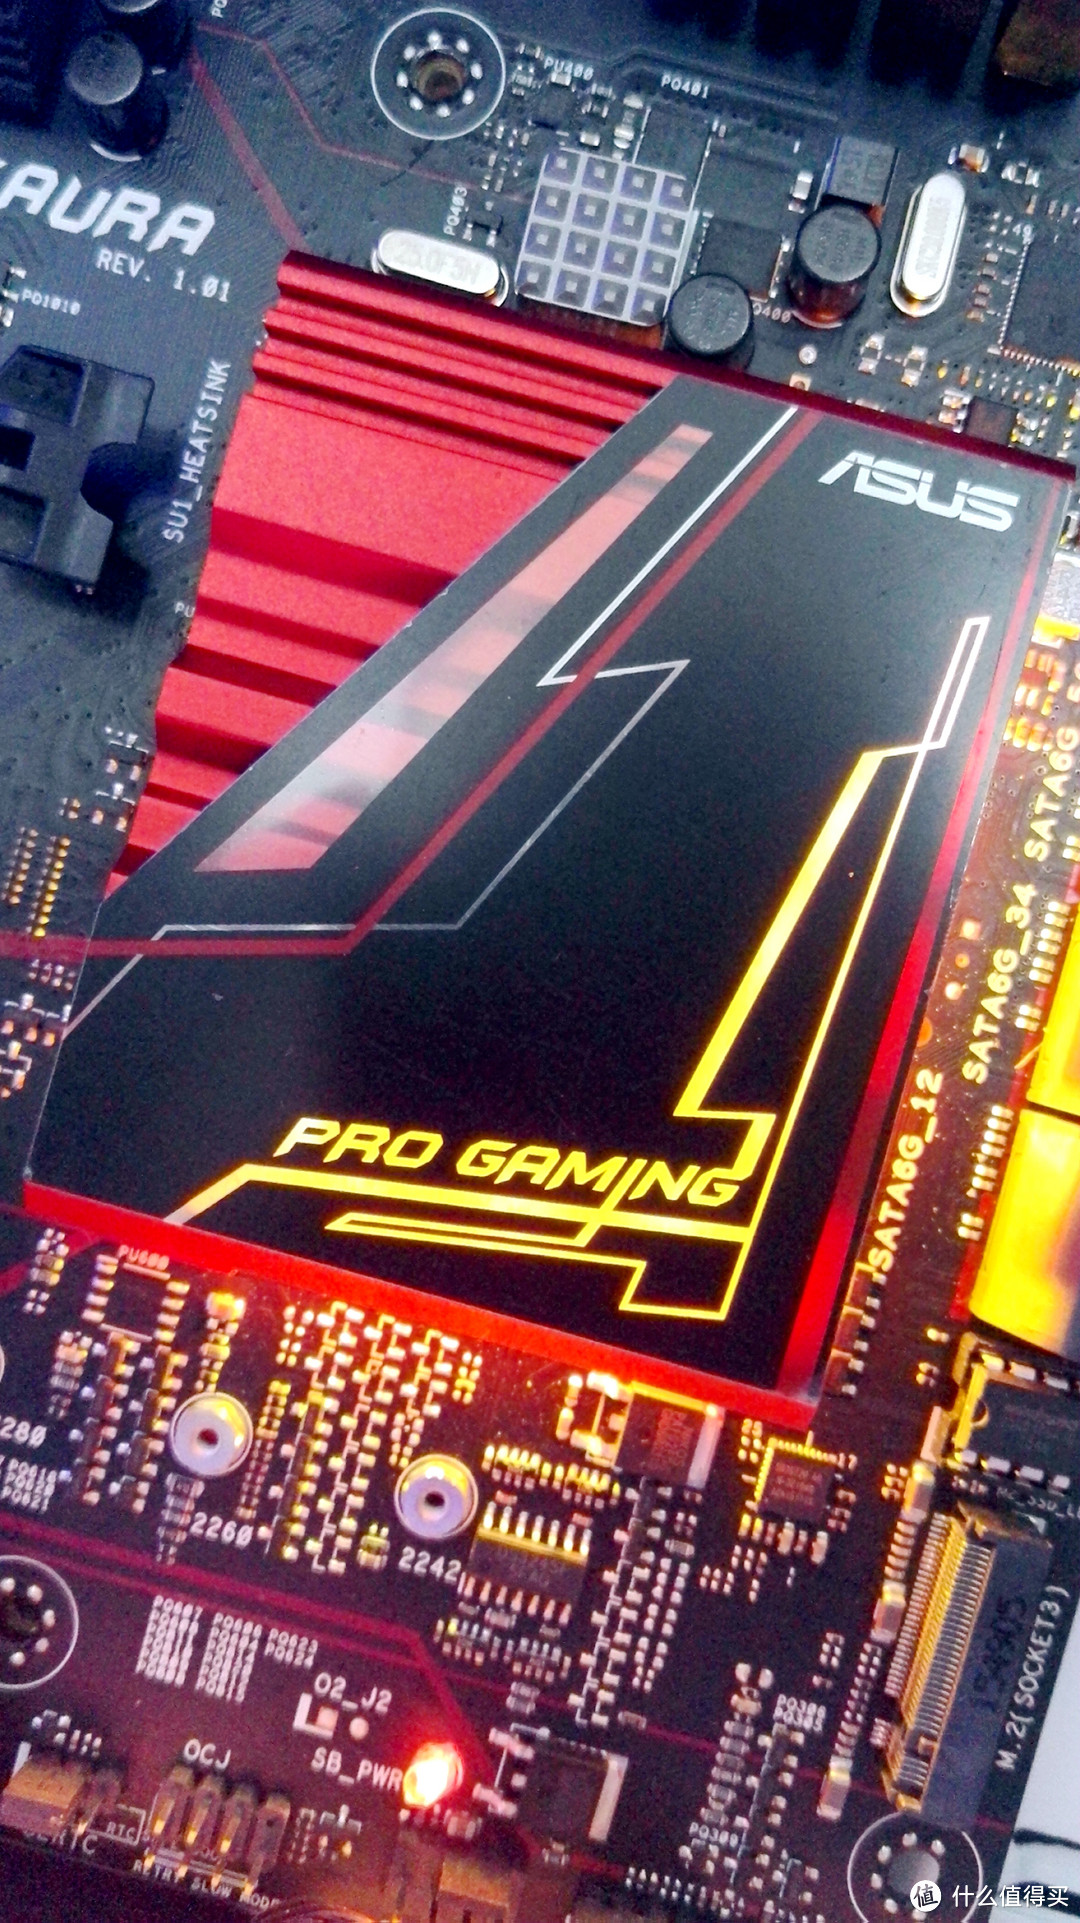 日常升级主机—— AMD FX 8300 +ASUS 970 PRO Gaming 升级记录（附加点评测）